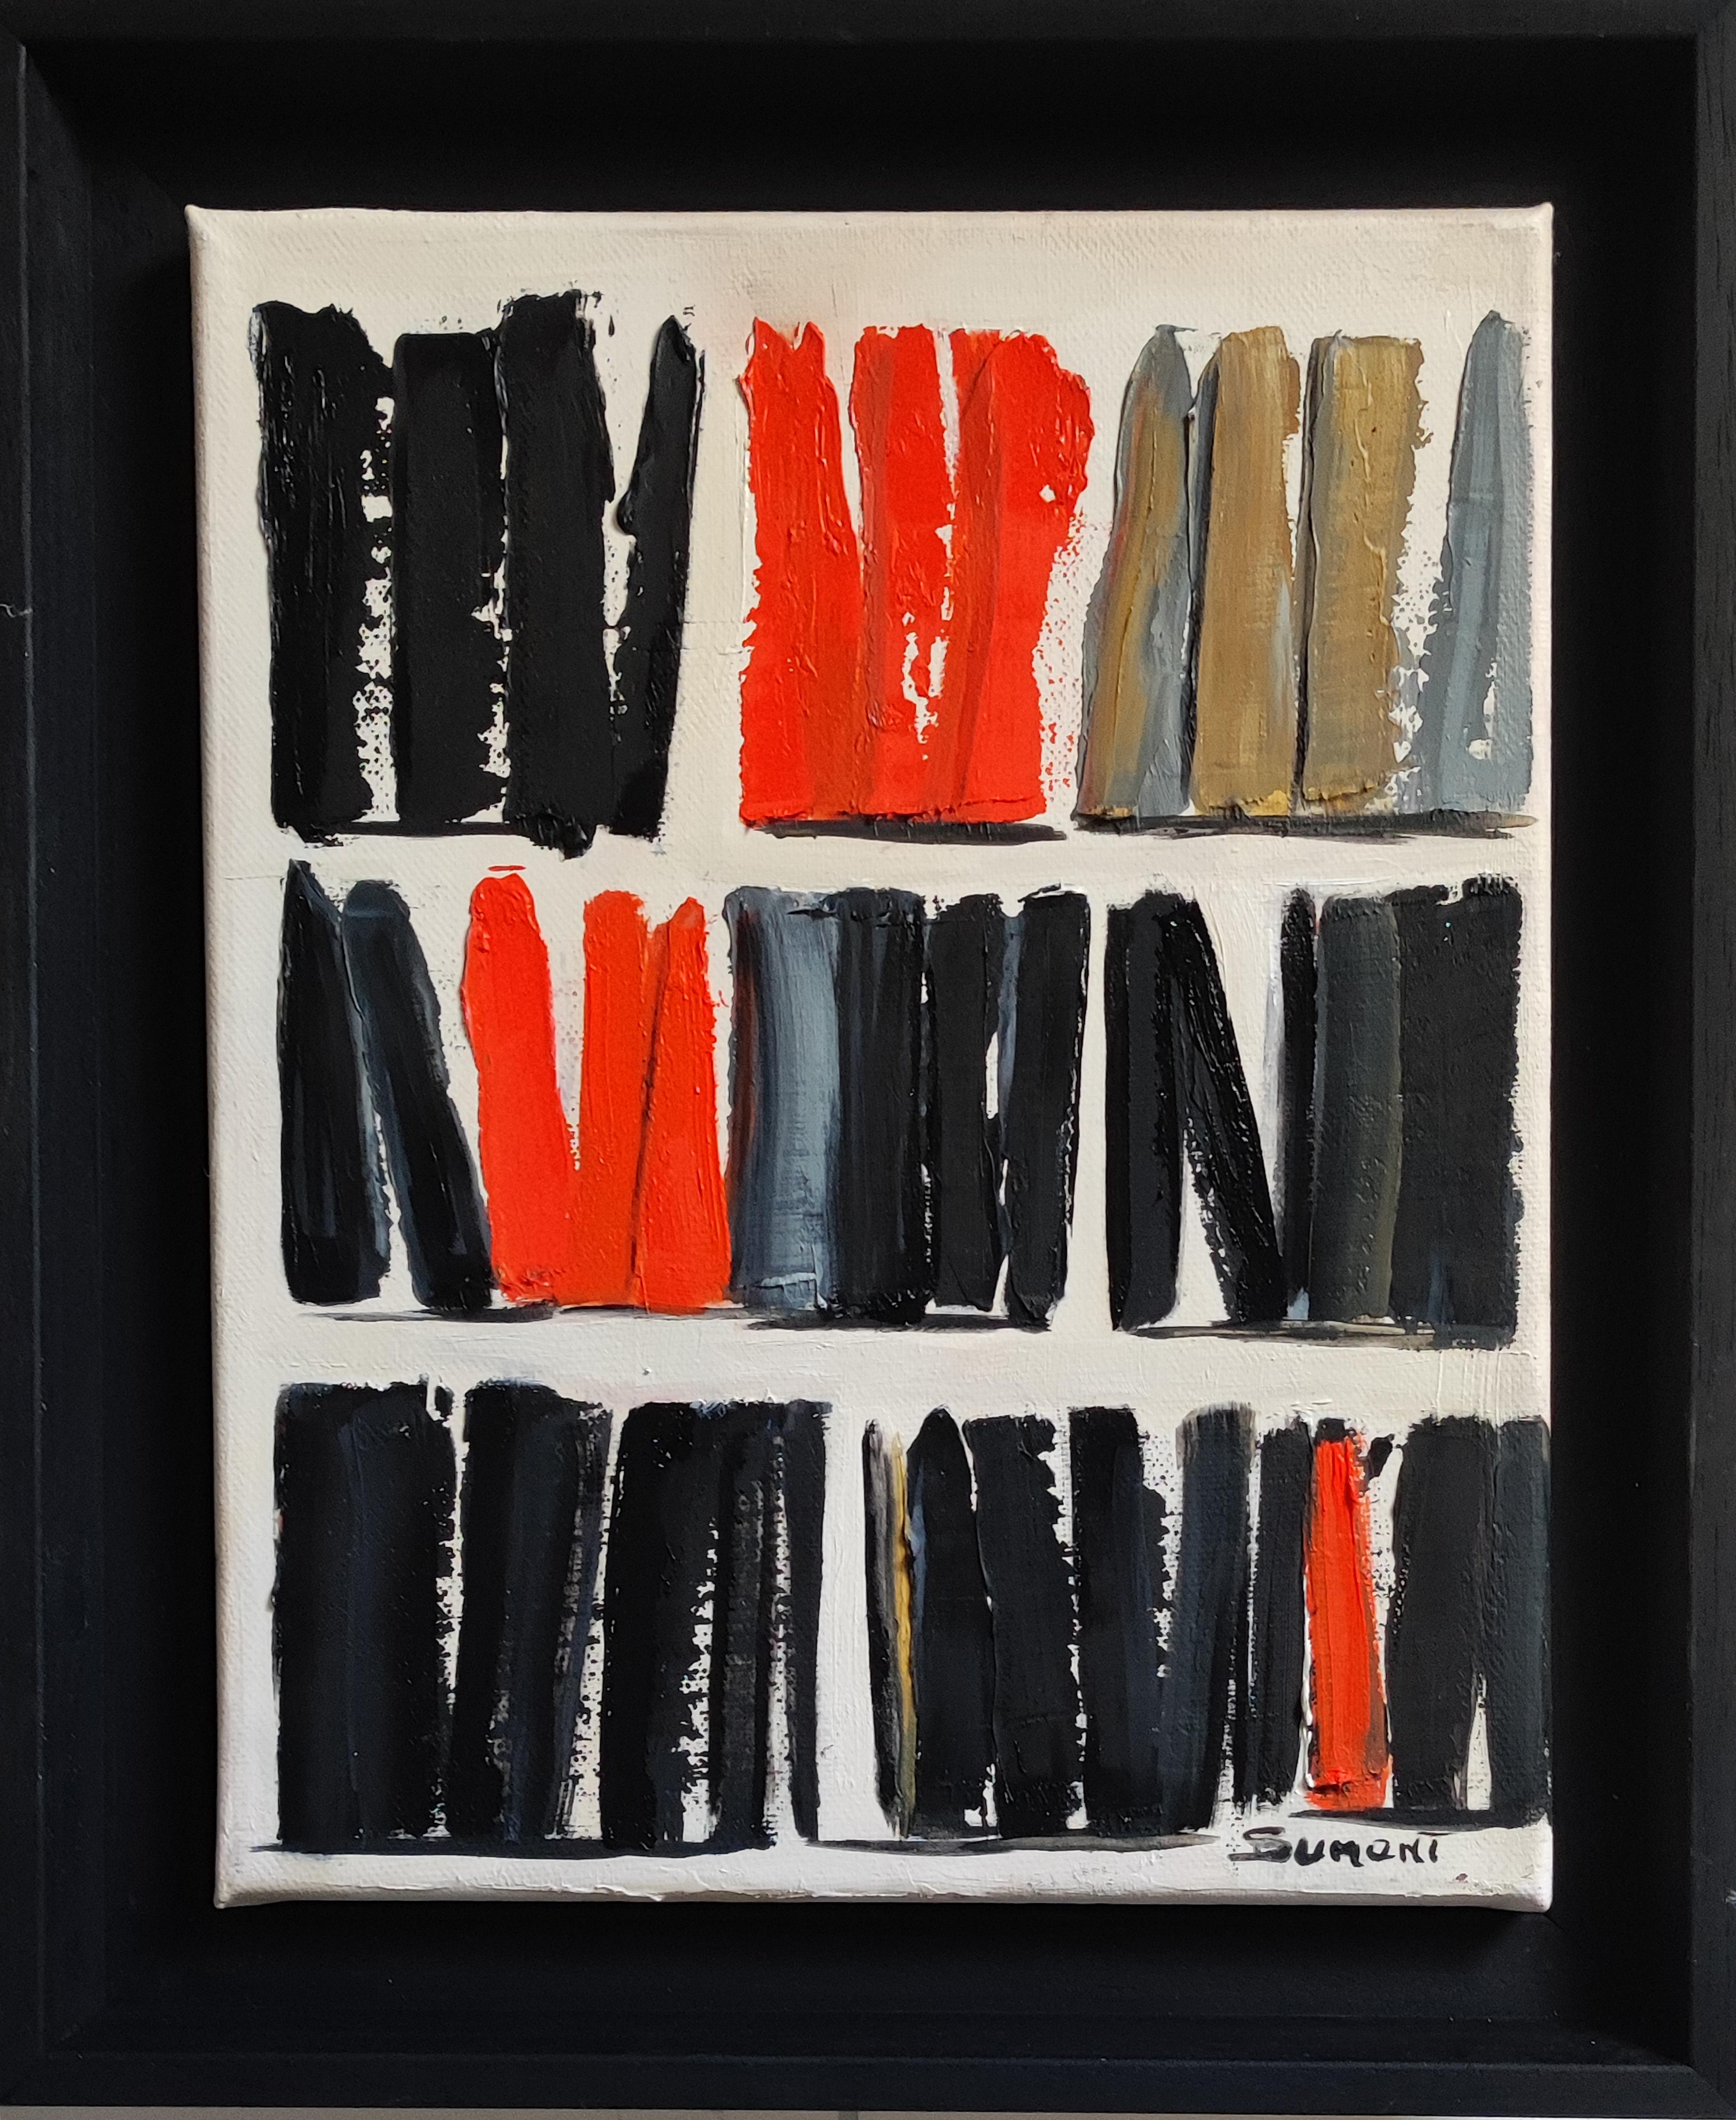  EPURE, minimalisme abstrait, rouge et noir, huile sur toile, expressionnisme, moderne - Painting de SOPHIE DUMONT